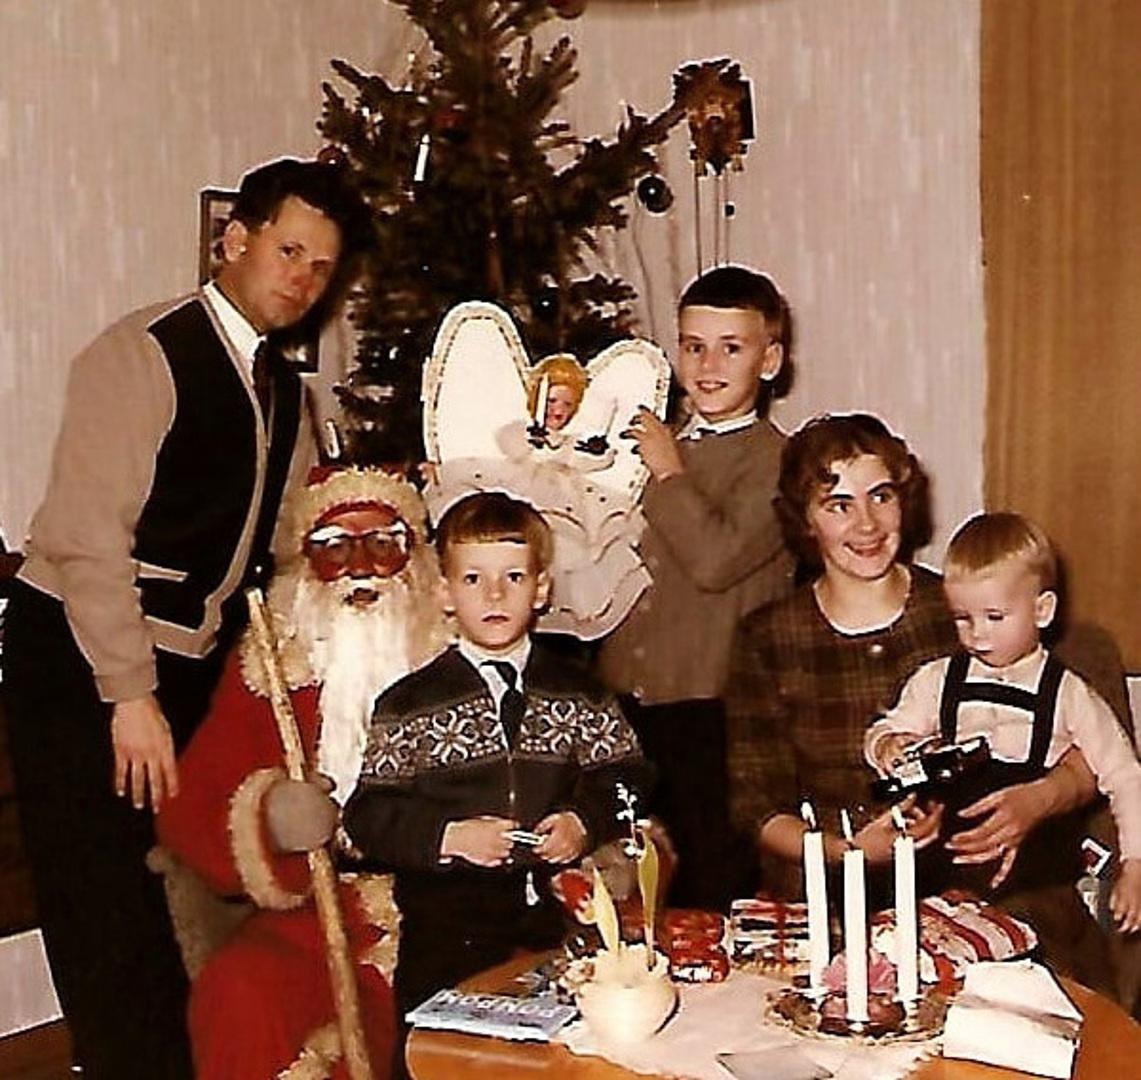 Leppilammen perheen viimeinen joulu kasarmilla. Joulupukin kanssa kuvassa Veikko ja Kaino Leppilampi sekä lapset Asko, Jukka ja Esa.